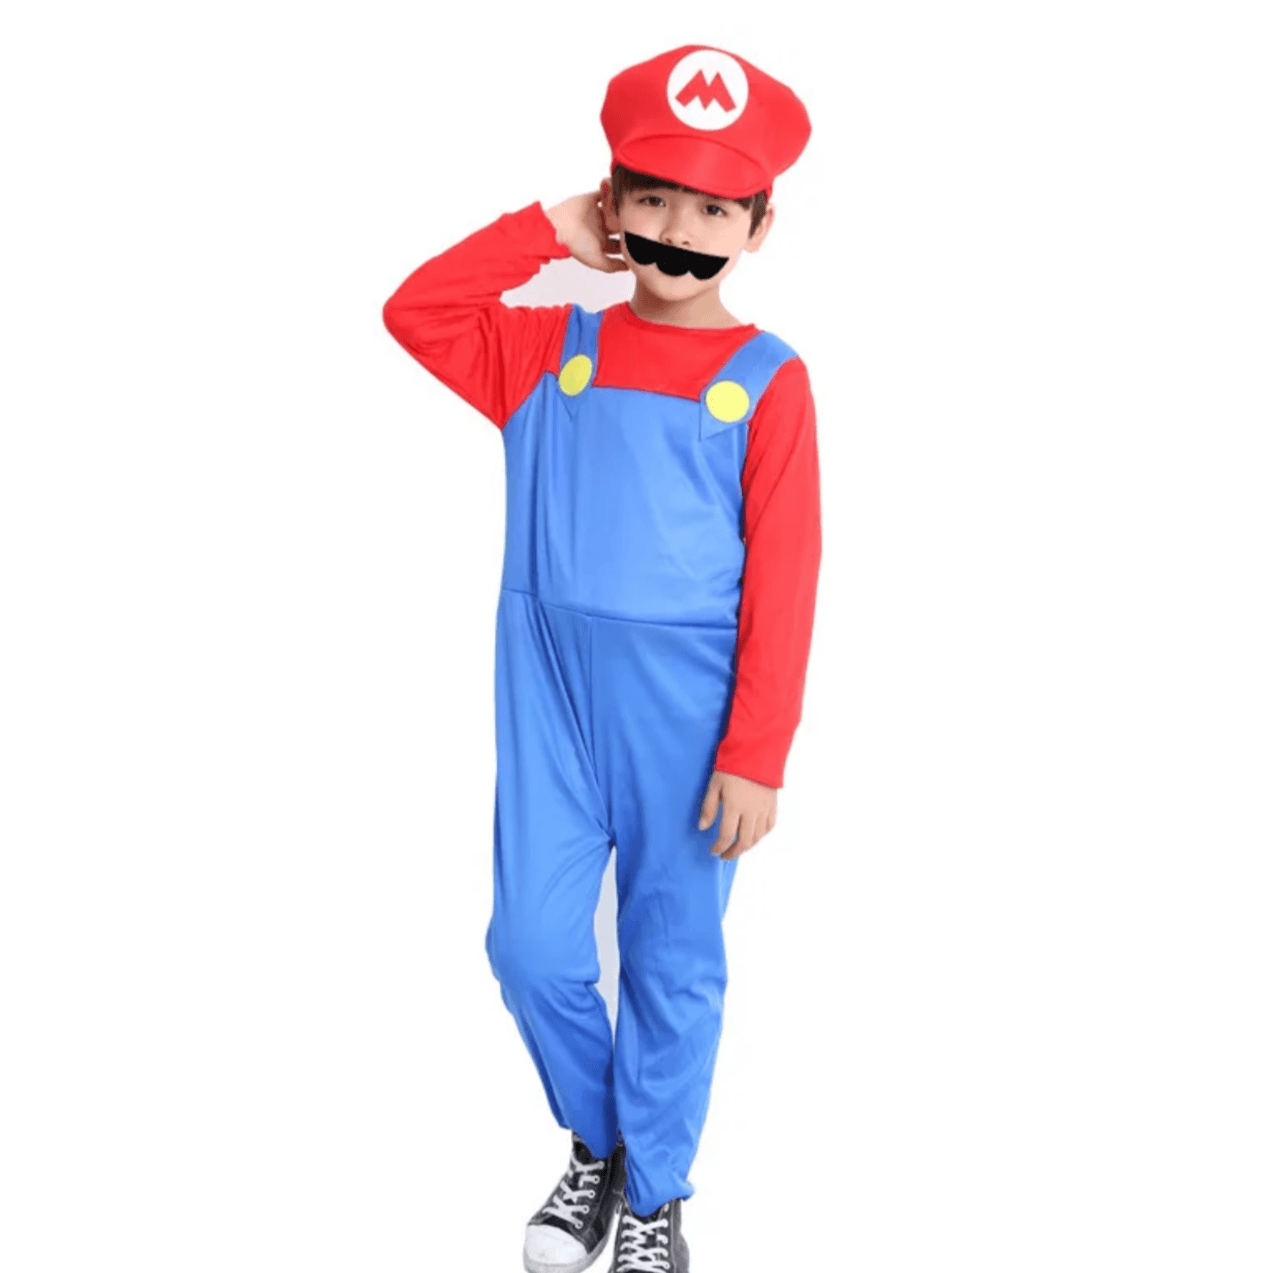 Mario & Luigi Costume - Expat Life Style